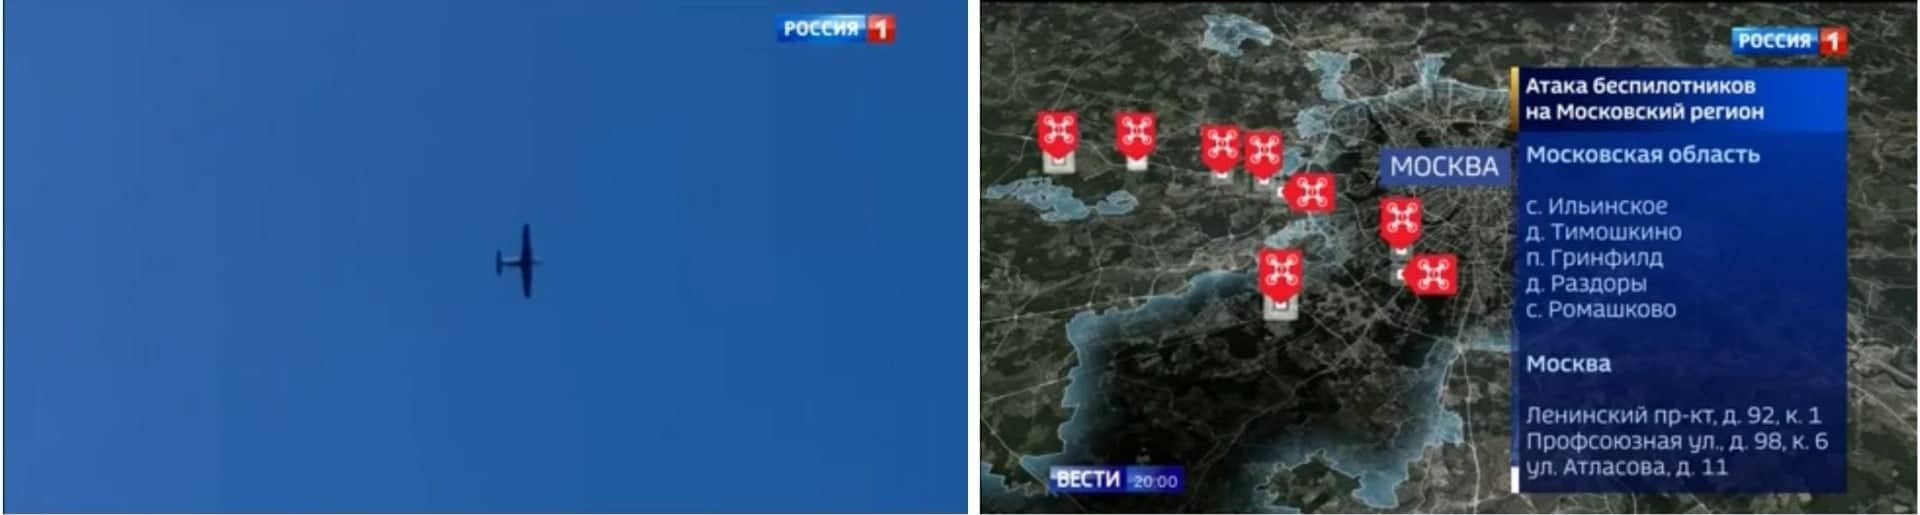 Zdjecie drona na niebie i rosyjska grafika pokazująca miejsca uderzeń dronów na terenie Moskwy